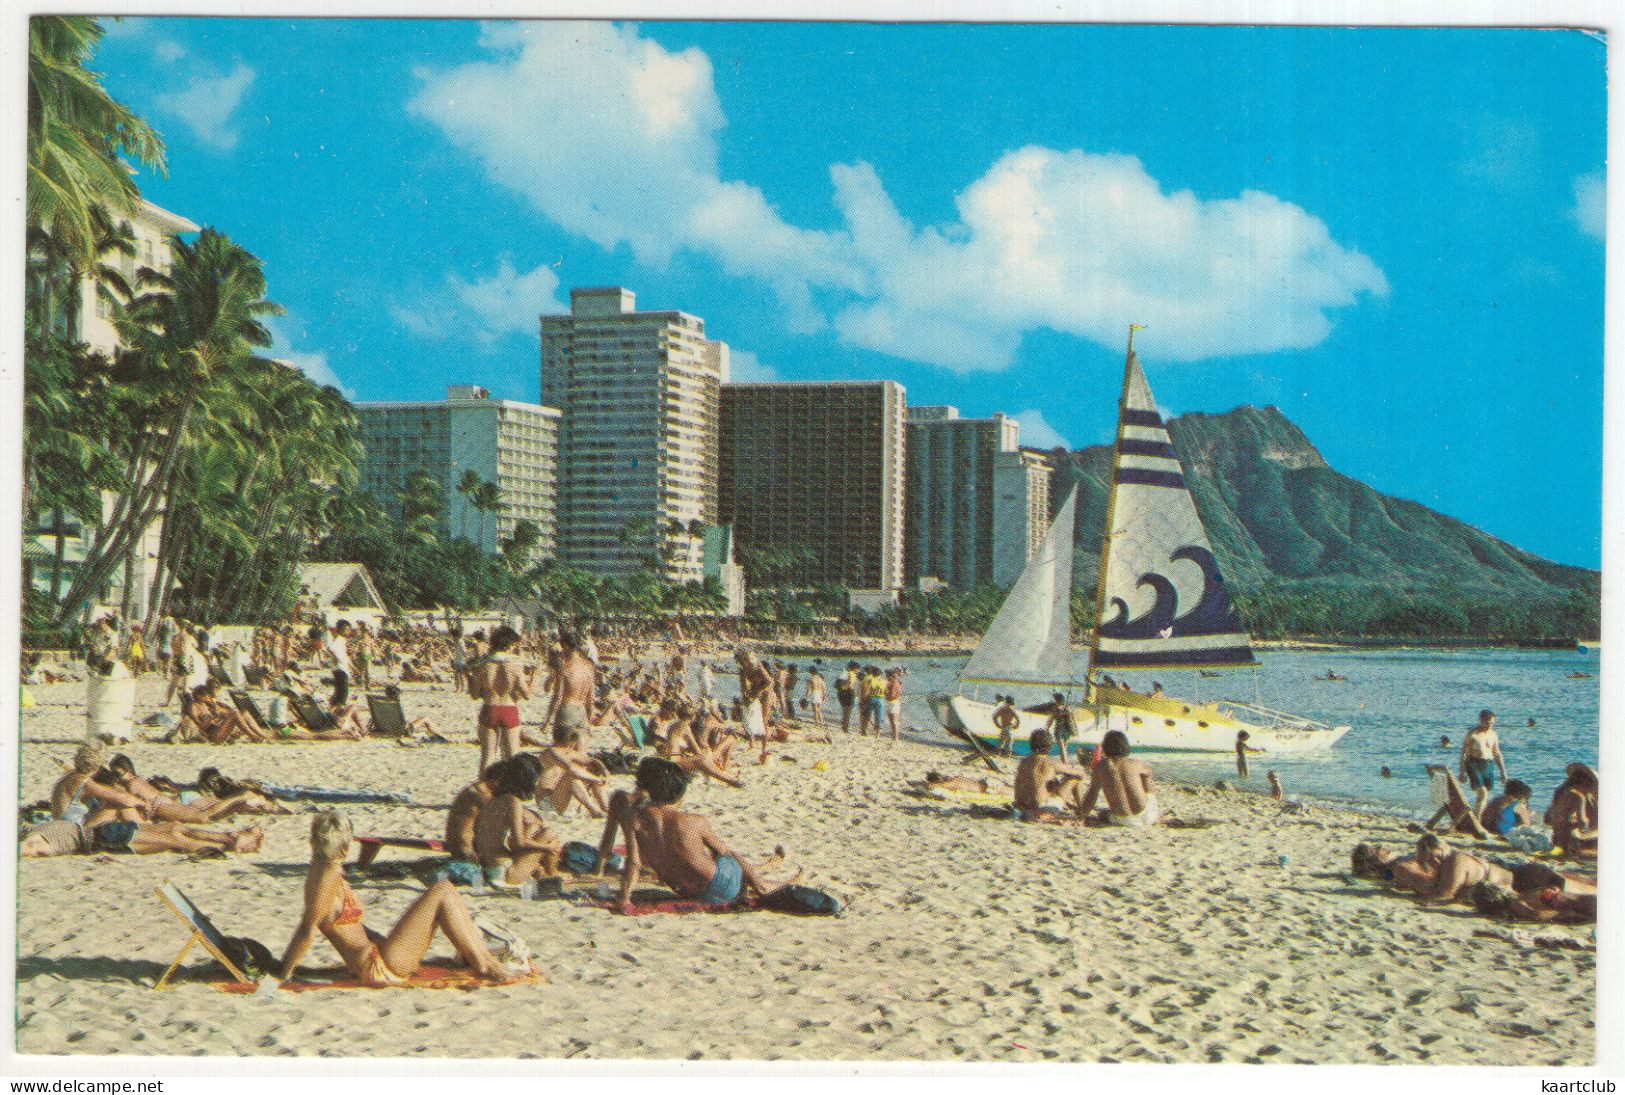 A Beautiful Sunny Day At Waikiki Beach, Hawaii - (HI., USA) - 1982 - Catamaran - Big Island Of Hawaii